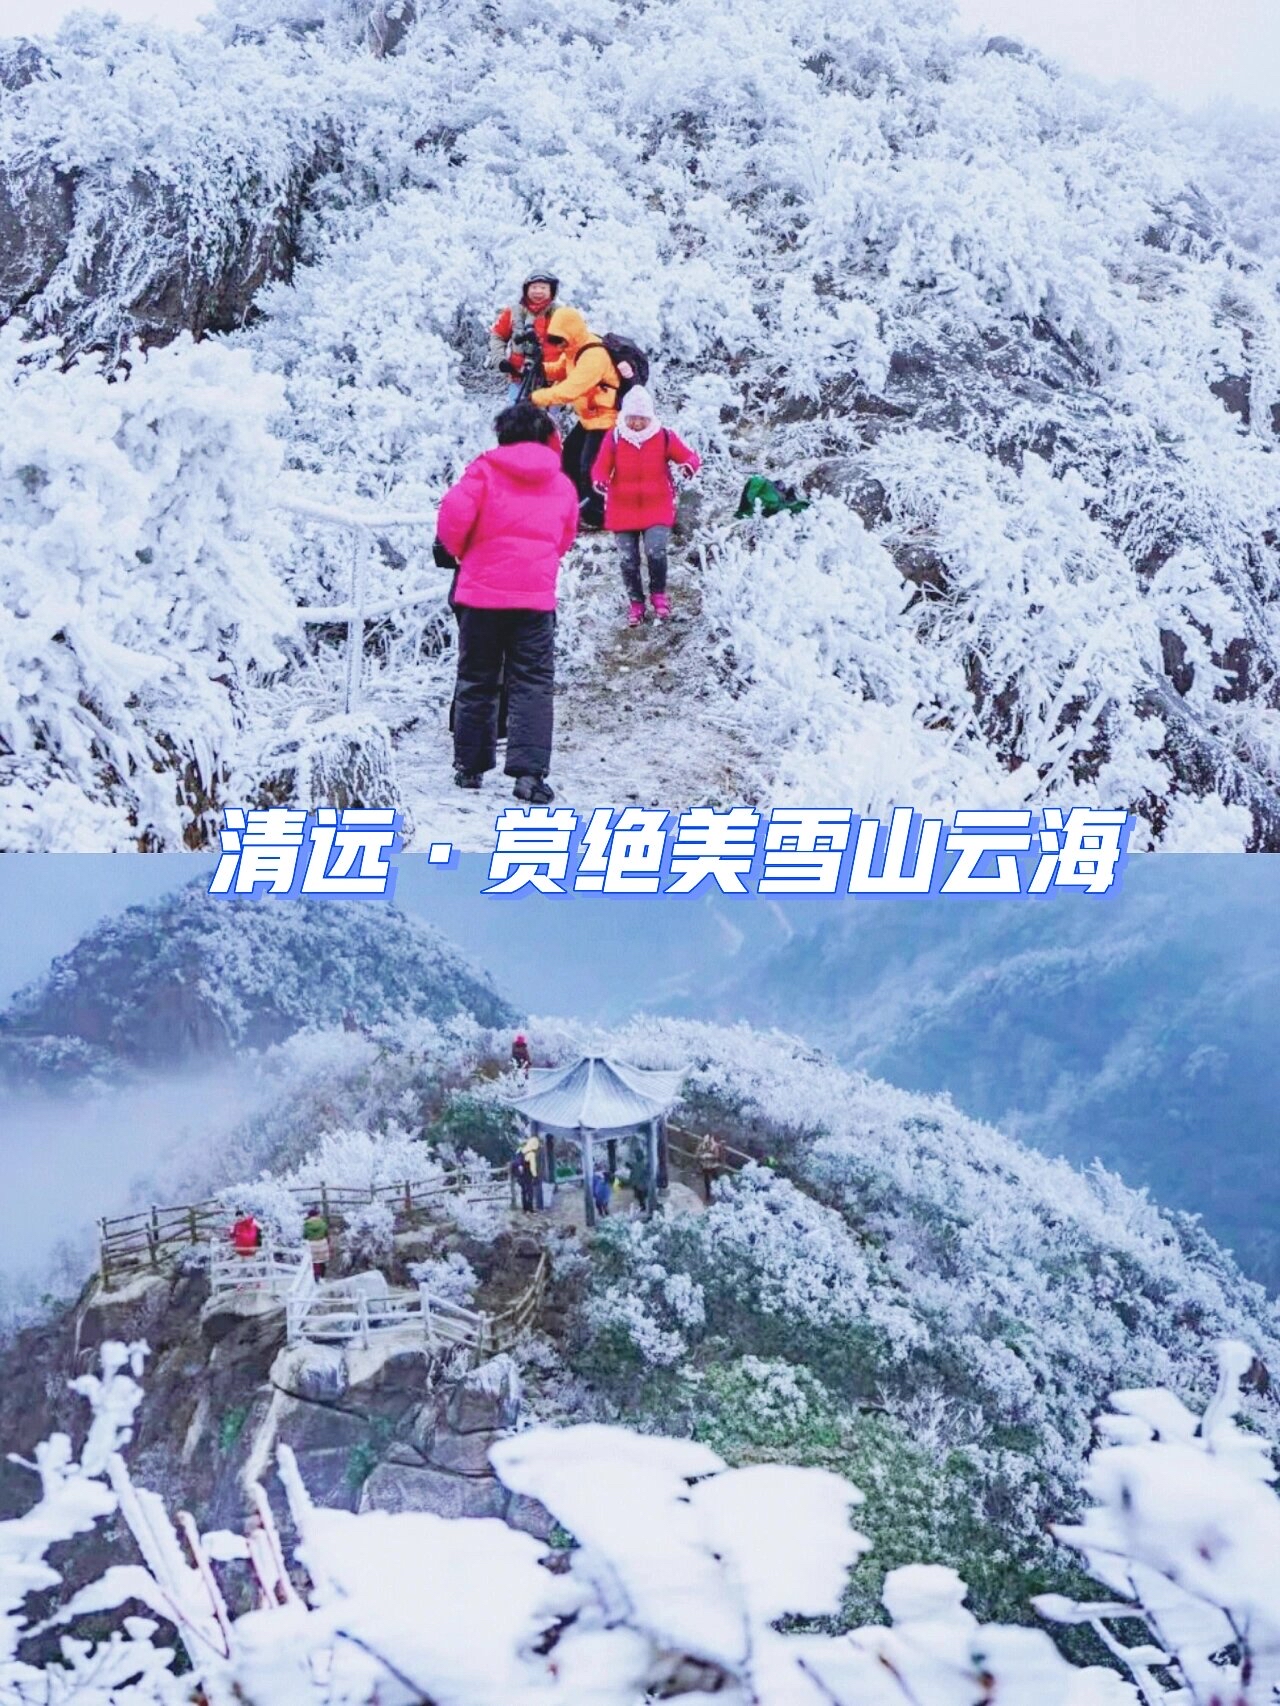 清远下雪啦❄️广东人不出省也能看雪啦，超赞